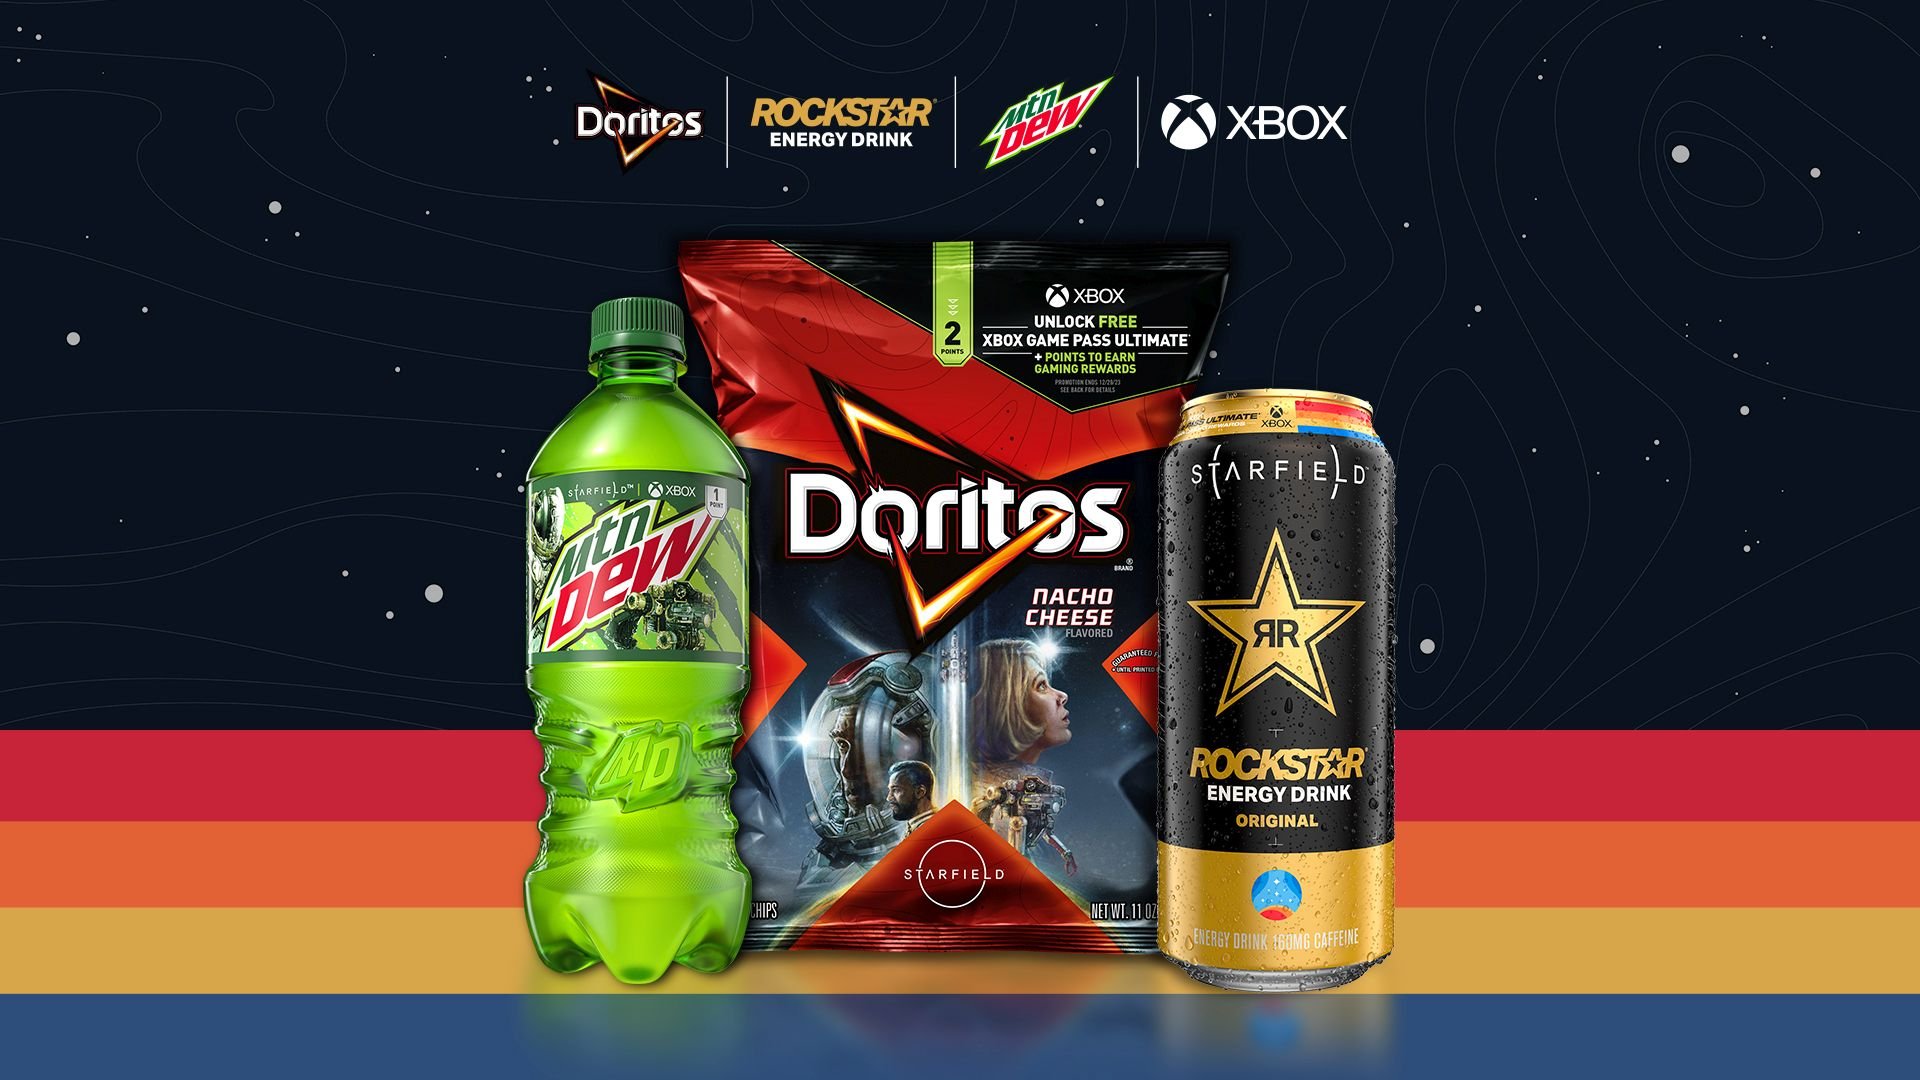 Audiense blog - imagen Xbox trabajó con Doritos, Mountain Dew y Rockstar Energy